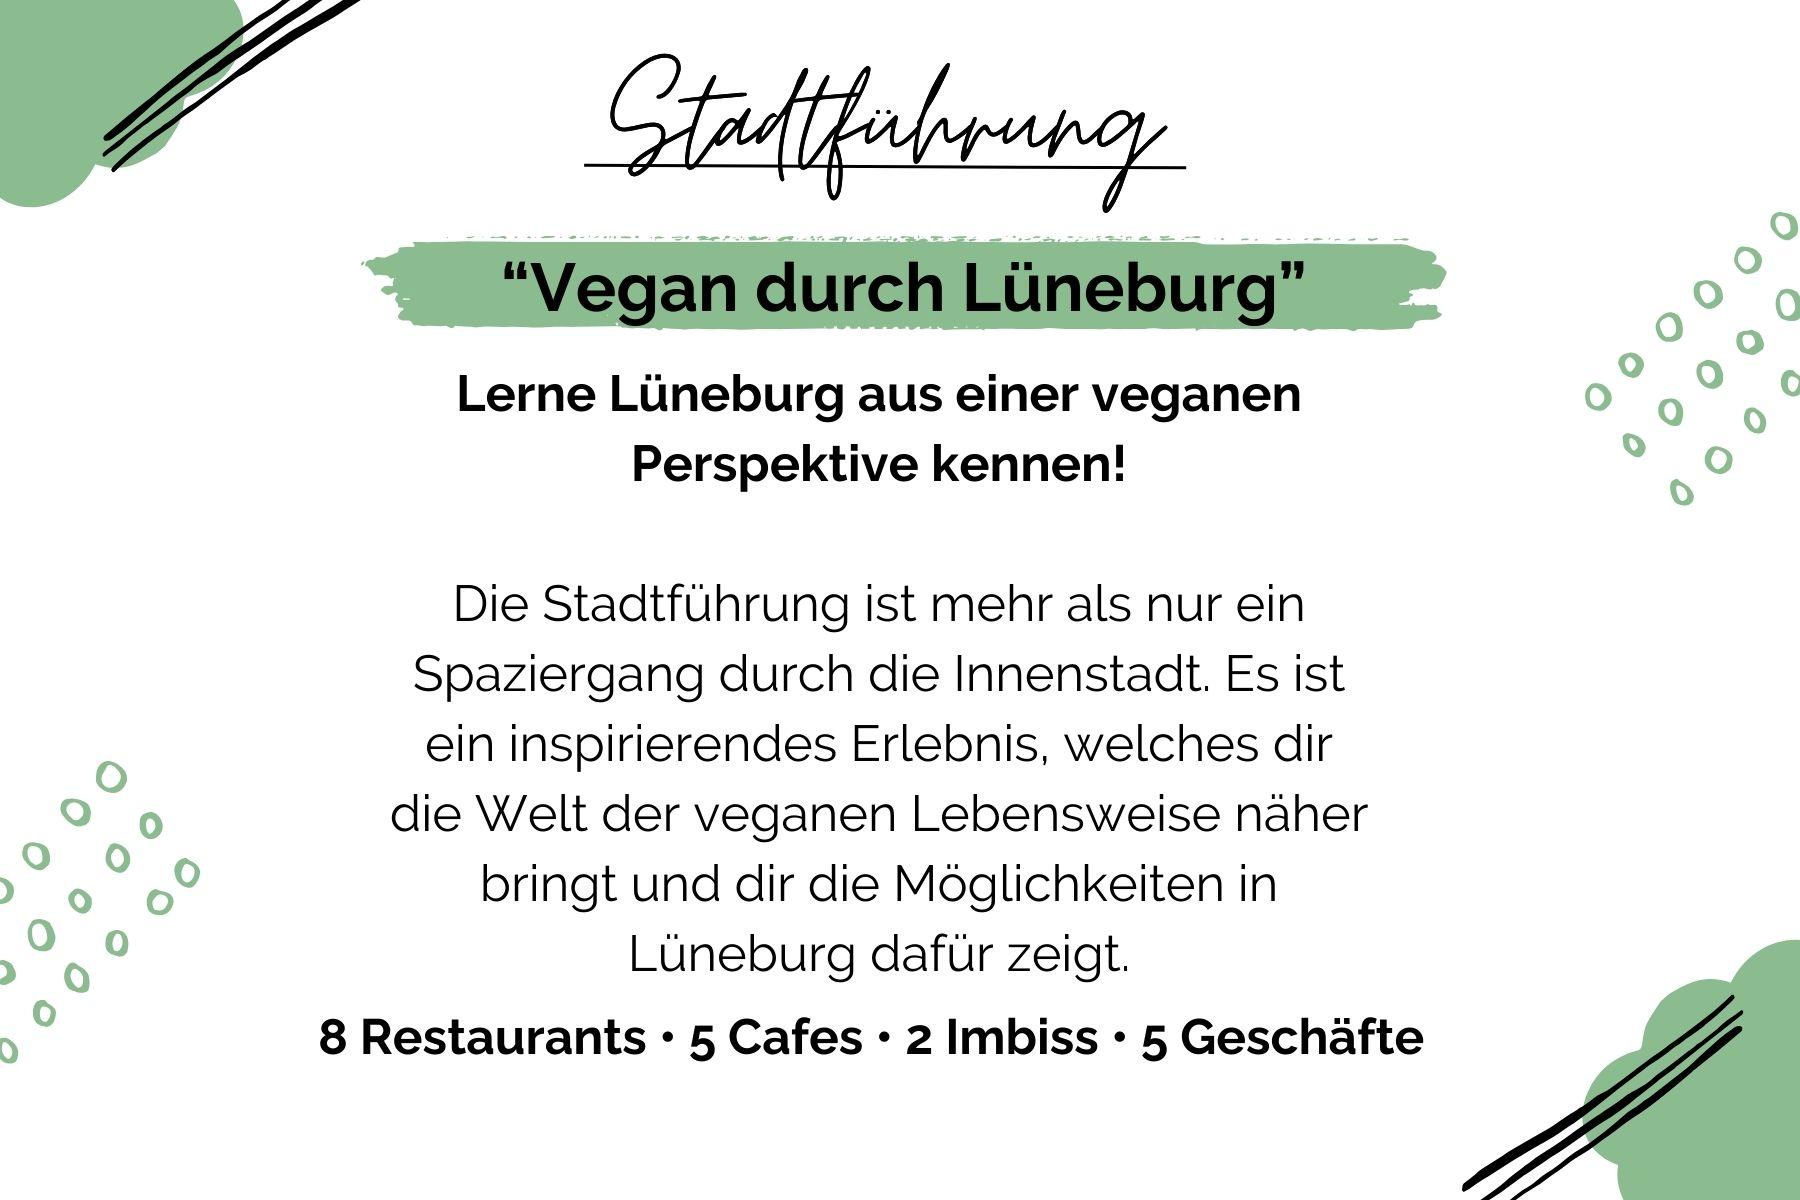 Lerne Lüneburg aus der veganen Perspektive kennen! Begleite uns auf unserer Stadtführung 